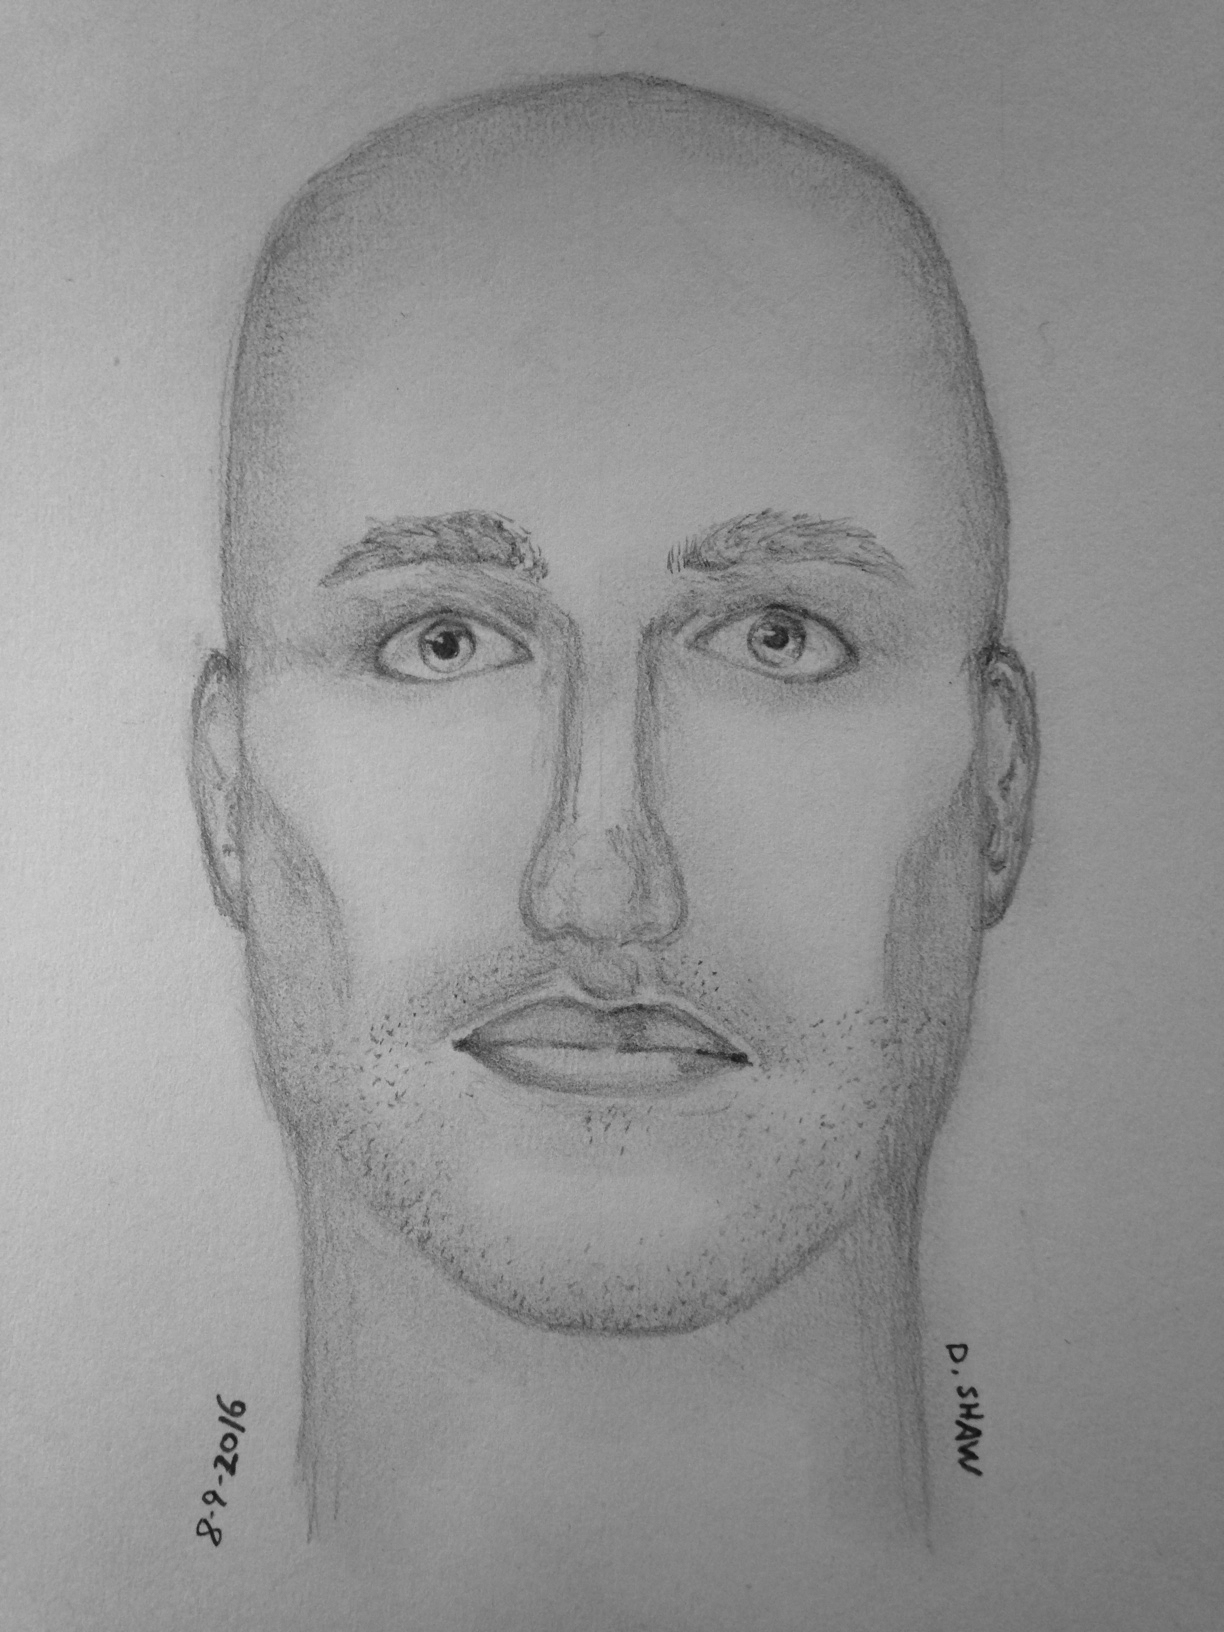 A suspect sketch